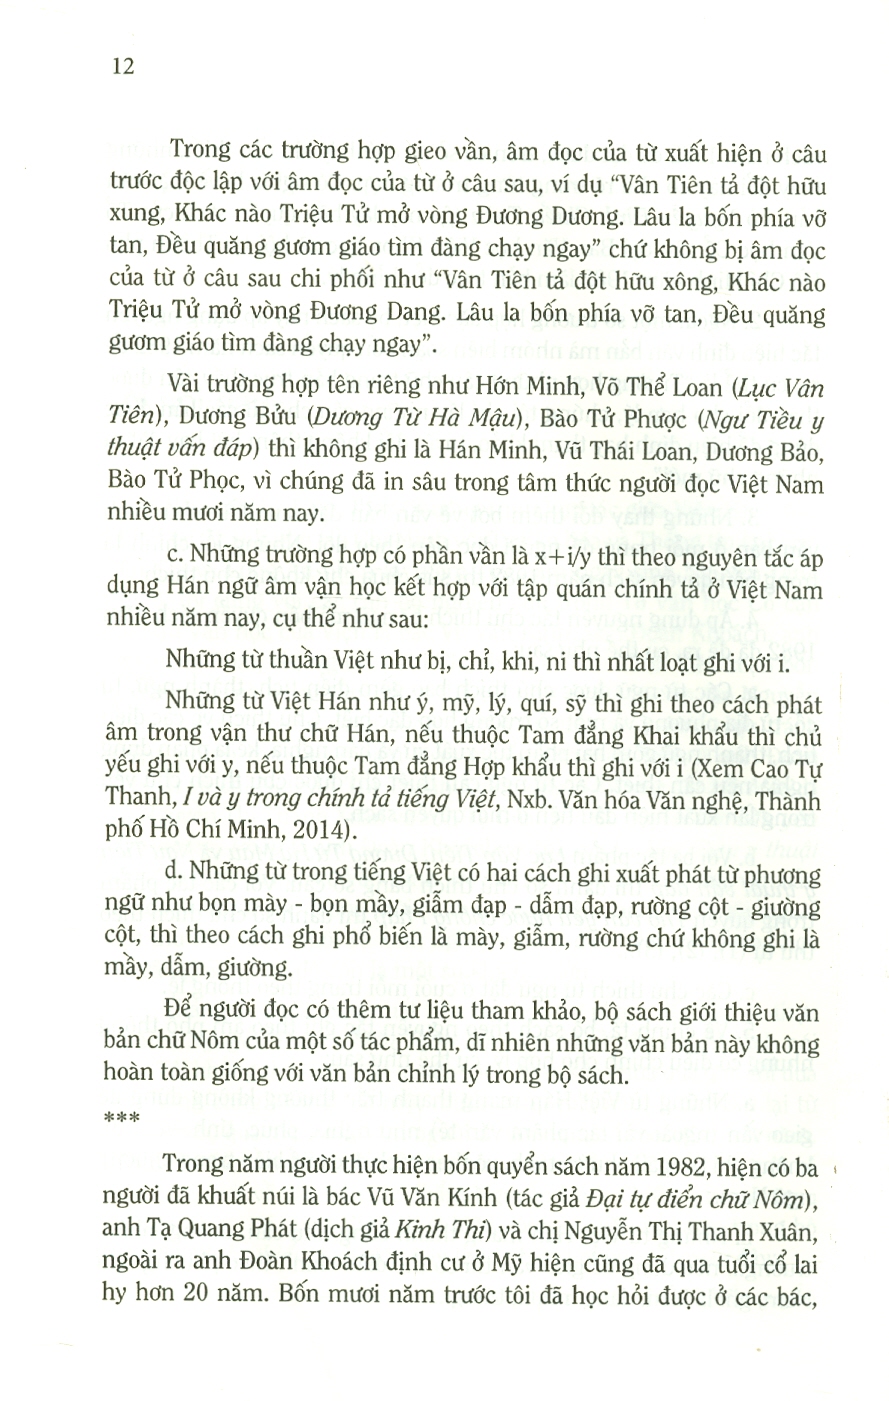 Nguyễn Đình Chiểu Toàn Tập - 2 Tập/Boxes (Bìa cứng)